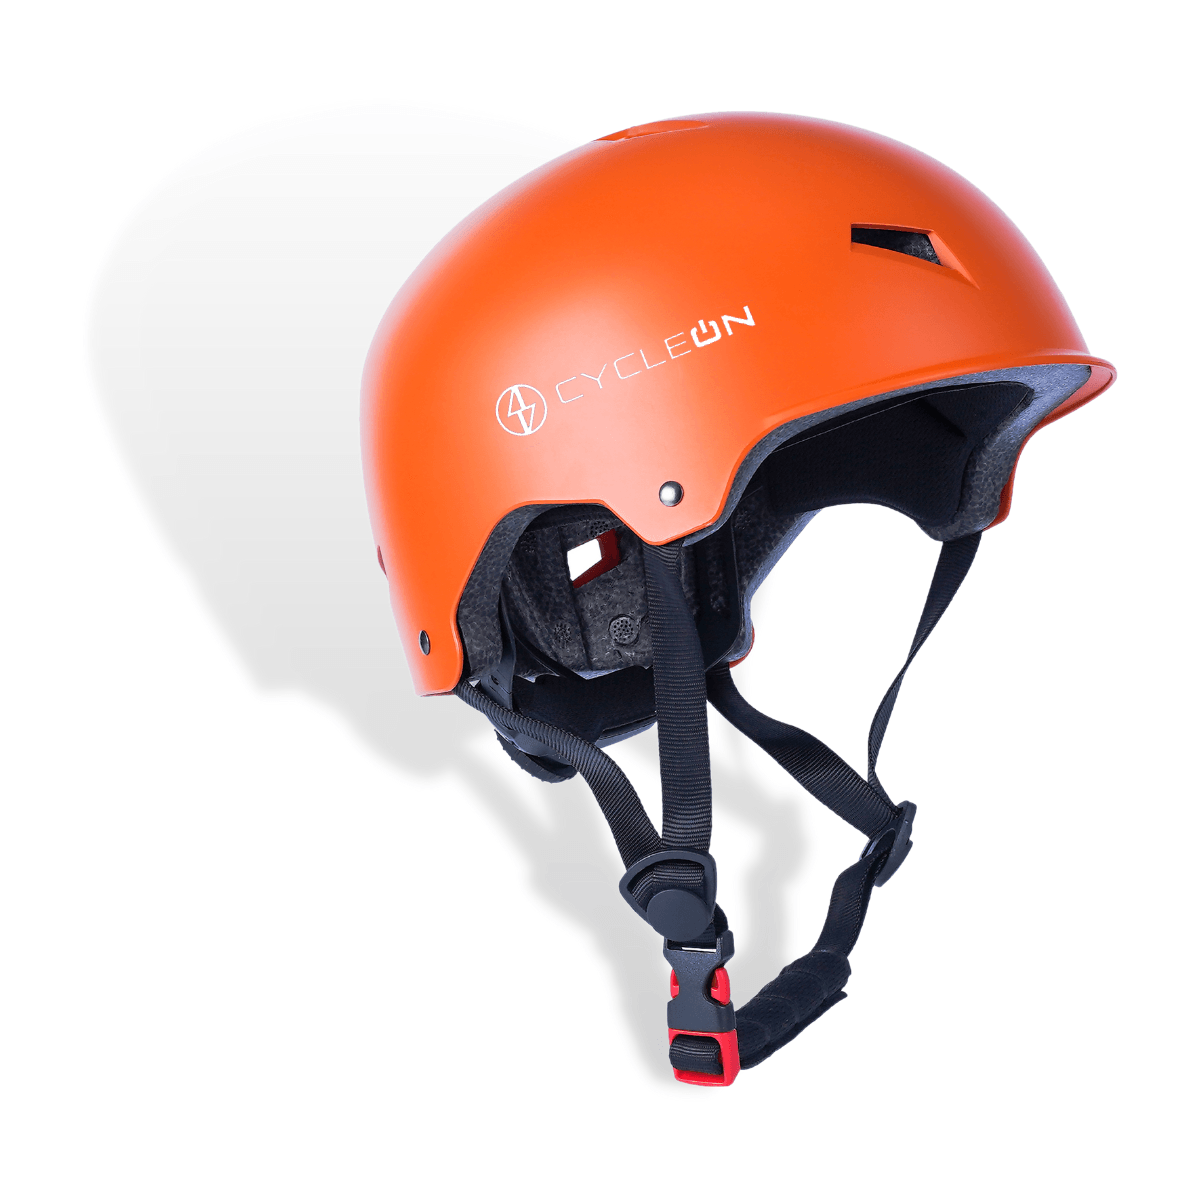 Helmet - CycleOn